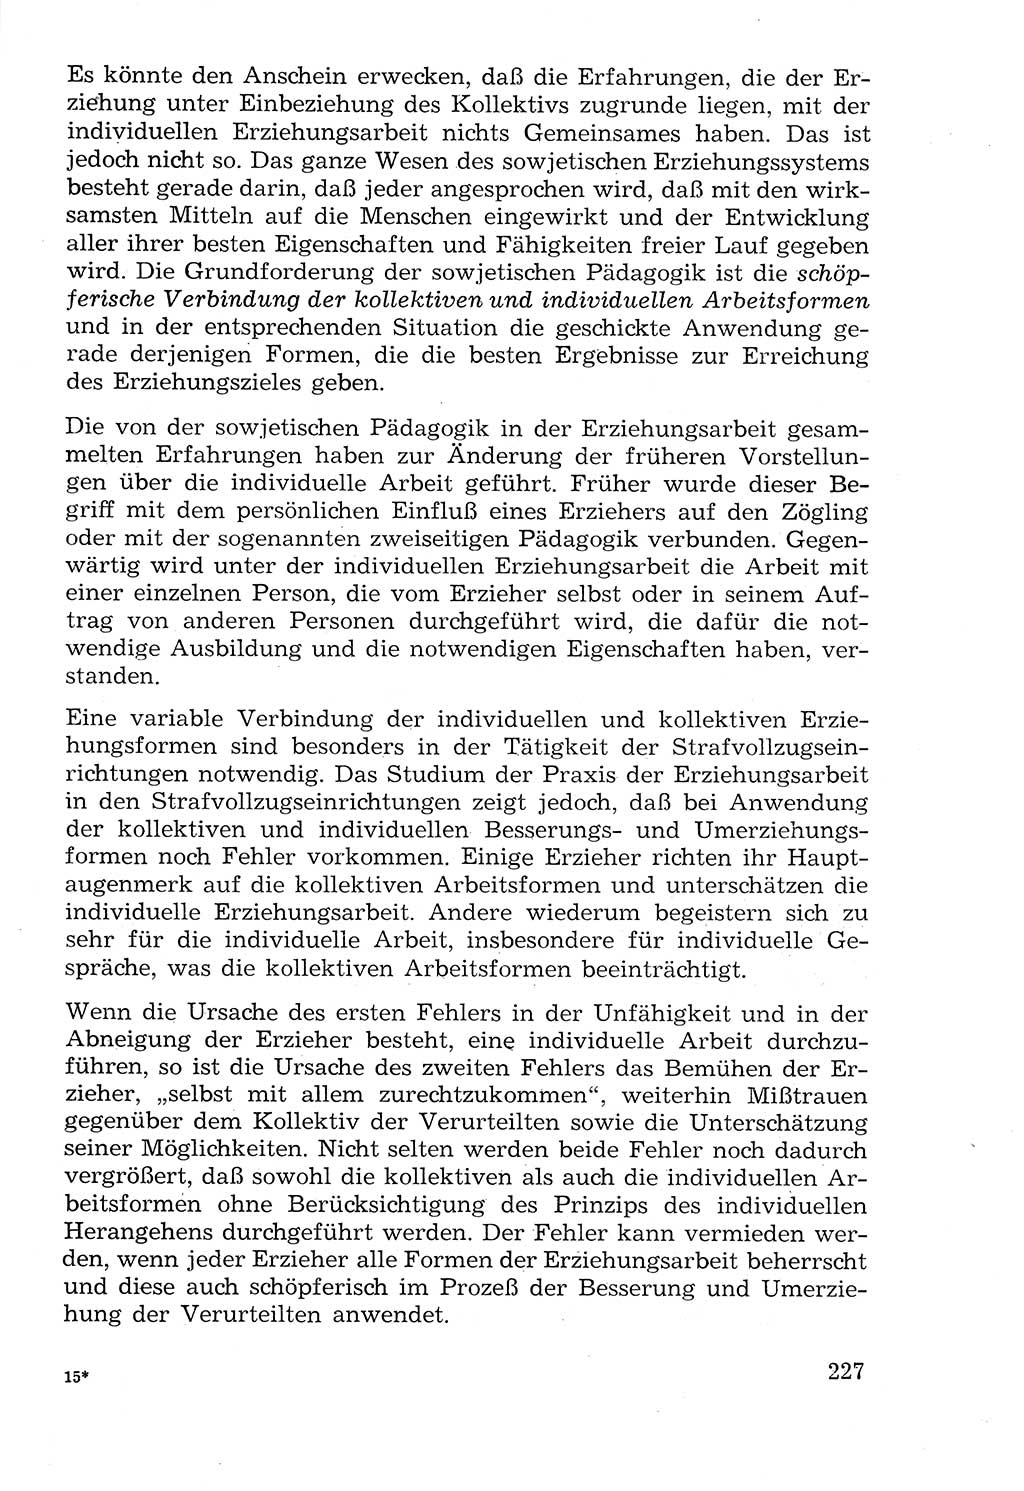 Lehrbuch der Strafvollzugspädagogik [Deutsche Demokratische Republik (DDR)] 1969, Seite 227 (Lb. SV-Pd. DDR 1969, S. 227)